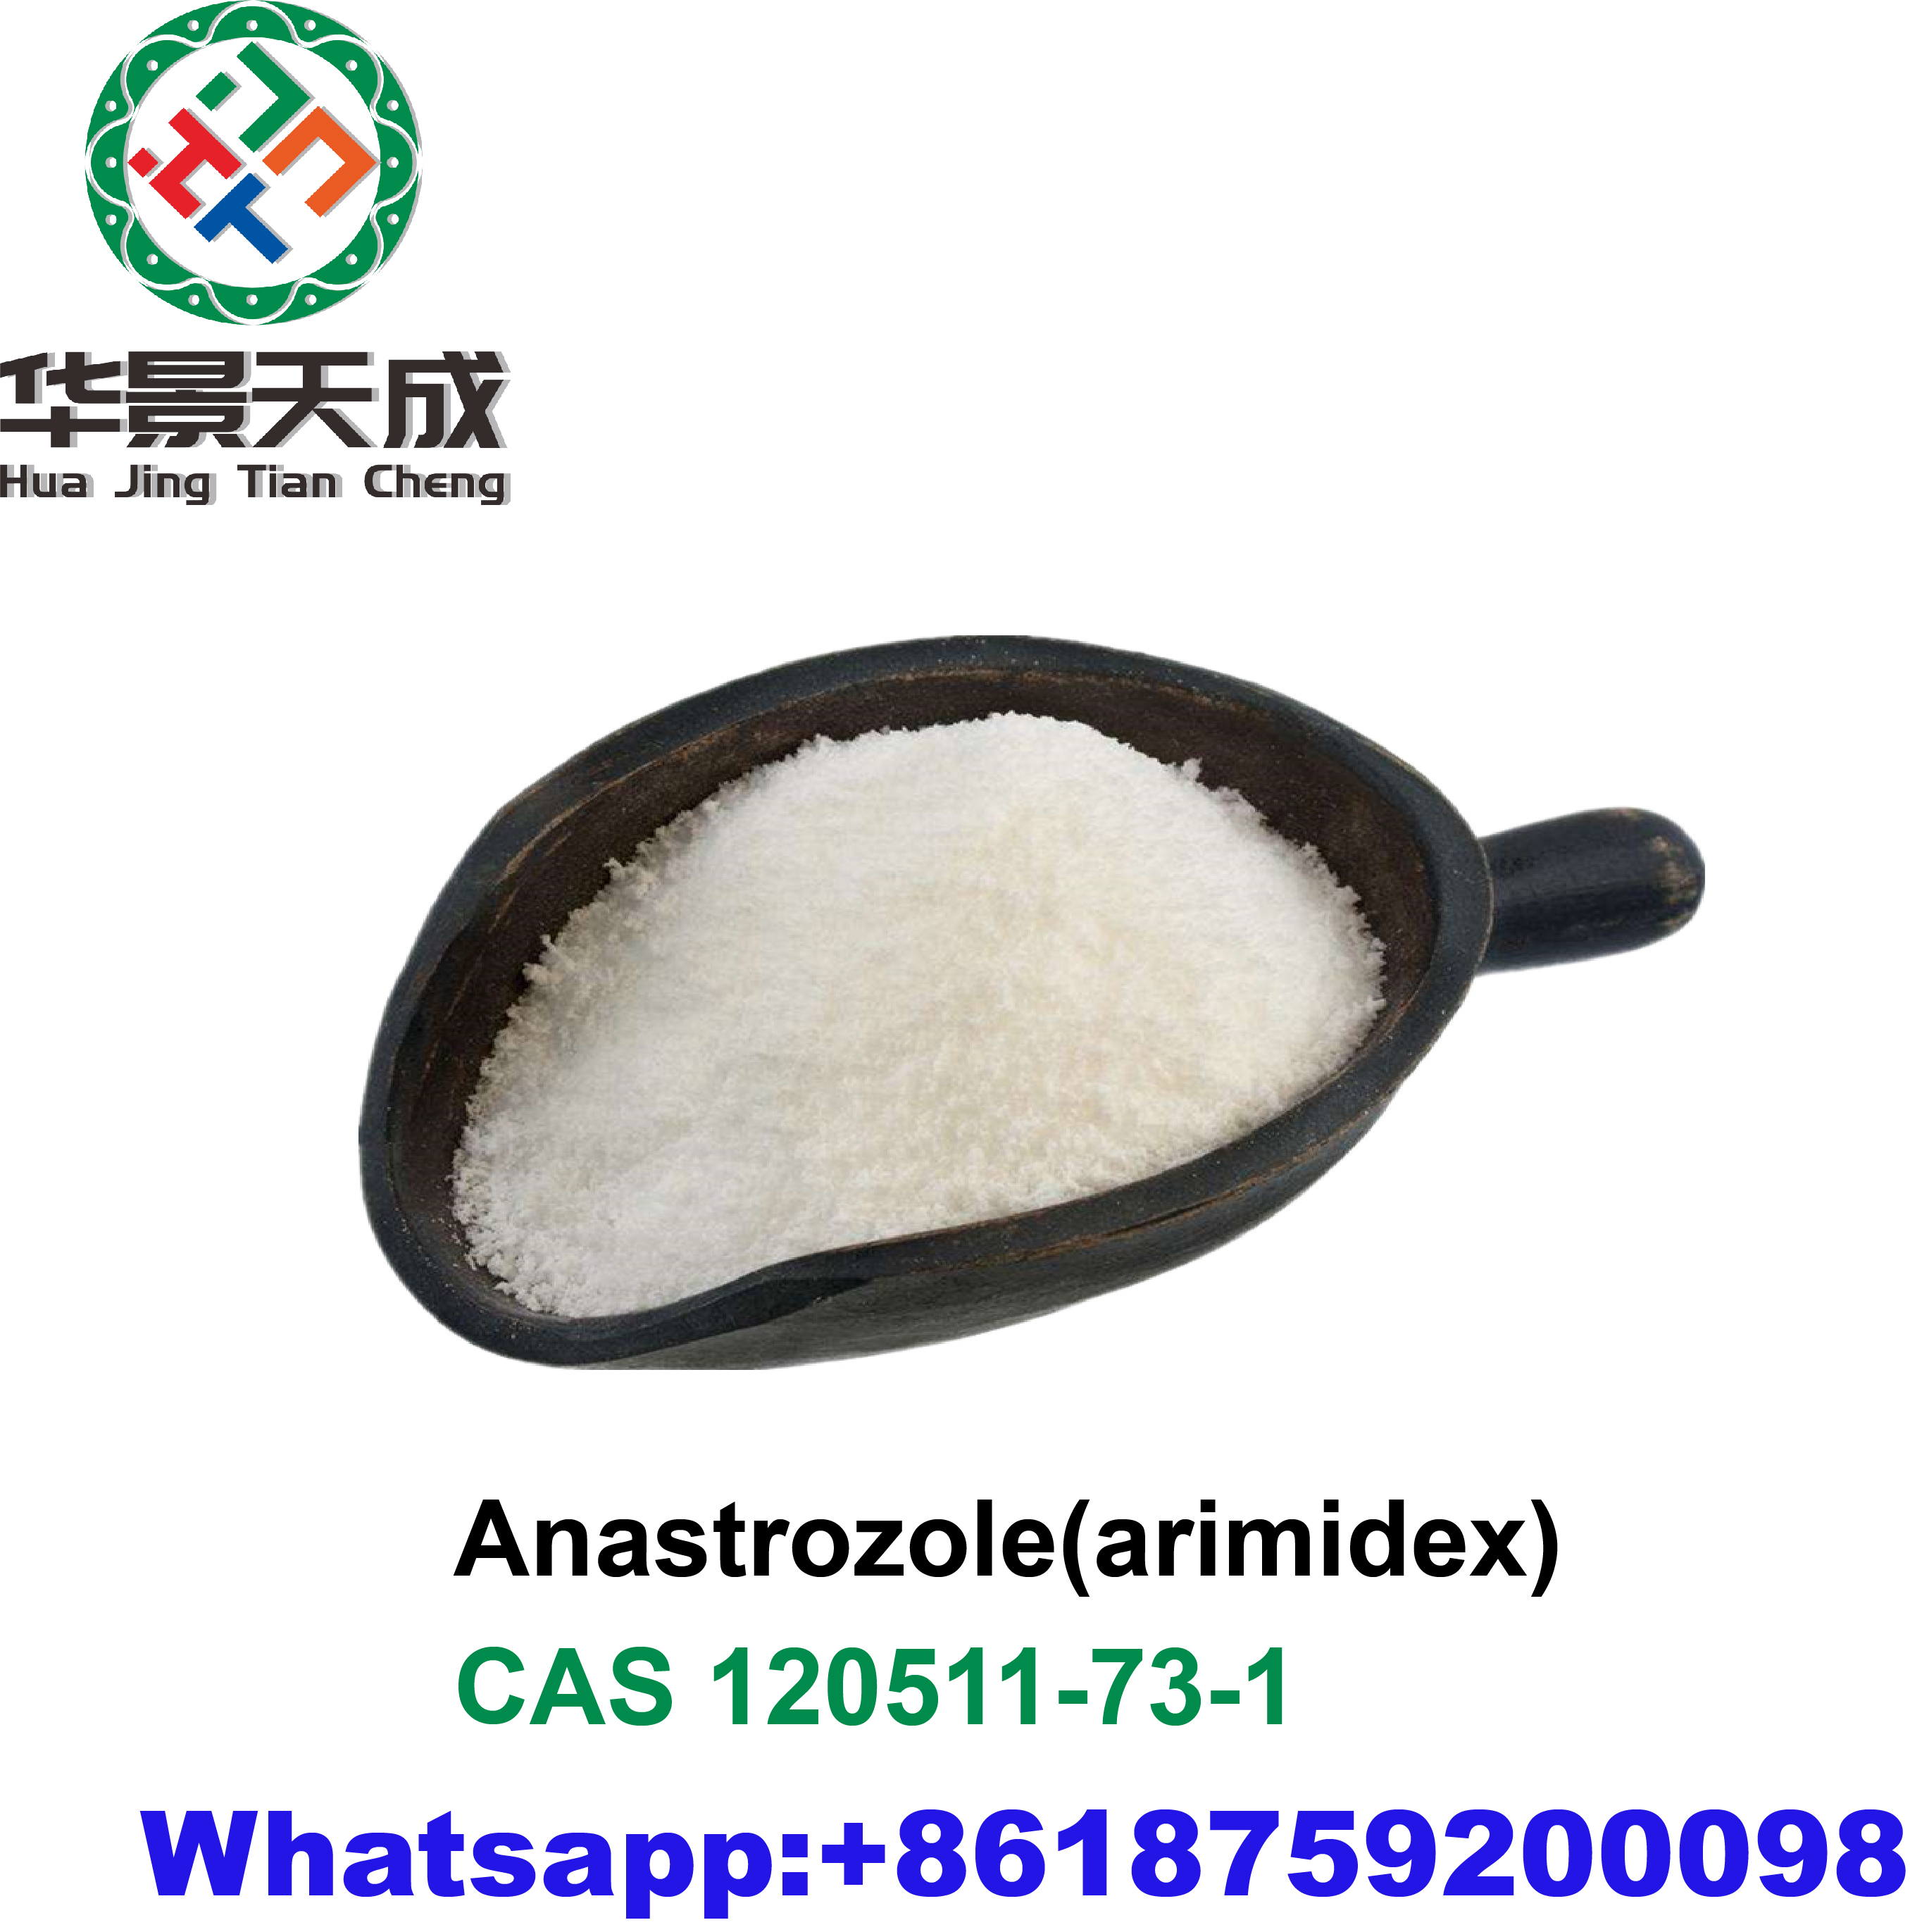 Anastrozole(arimidex)1